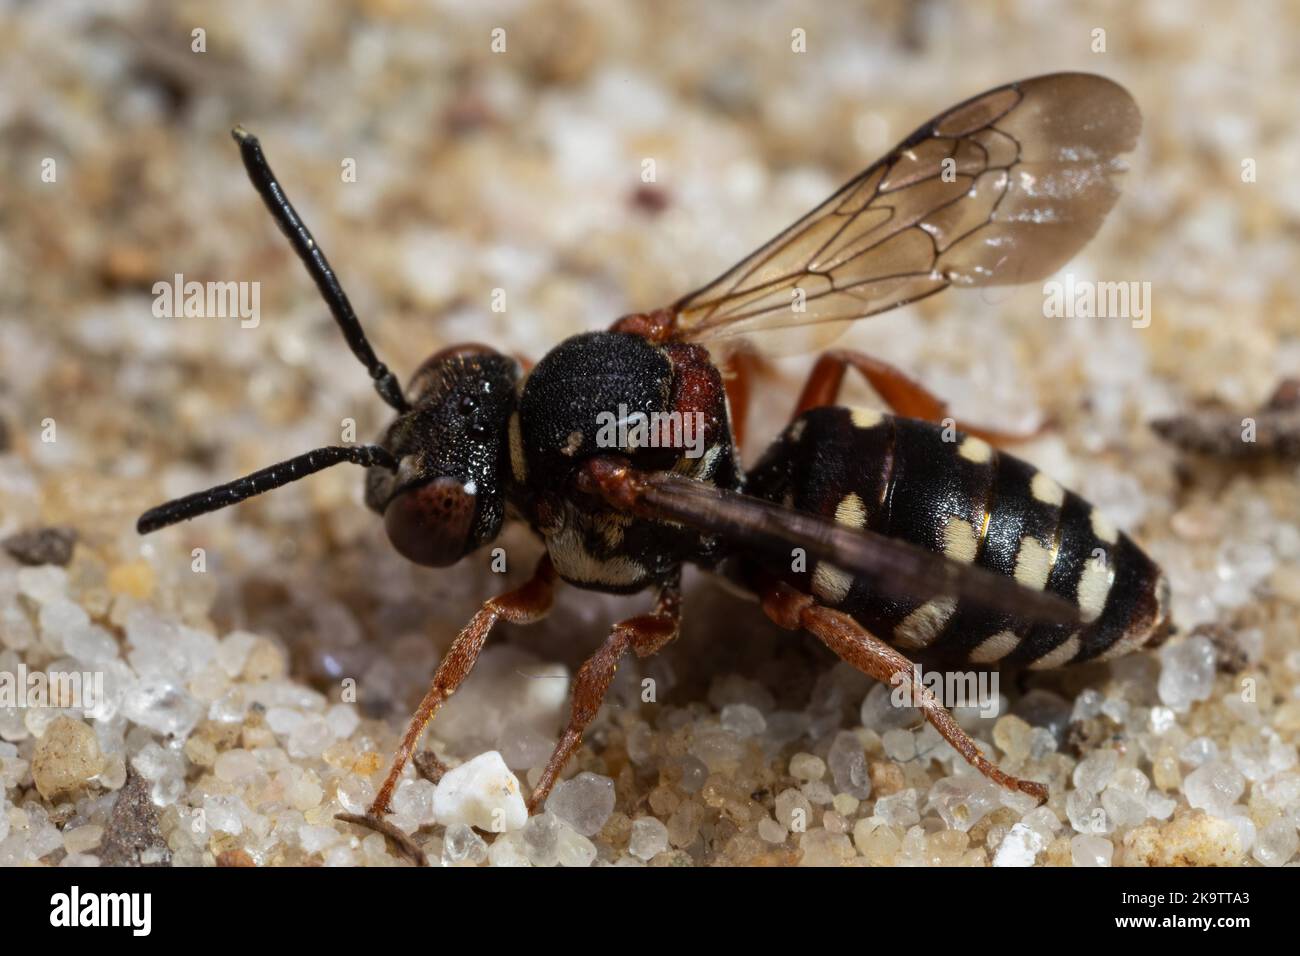 Heath Filzbiene mit offenen Flügeln auf sandigen Boden sitzend und nach links schauend Stockfoto